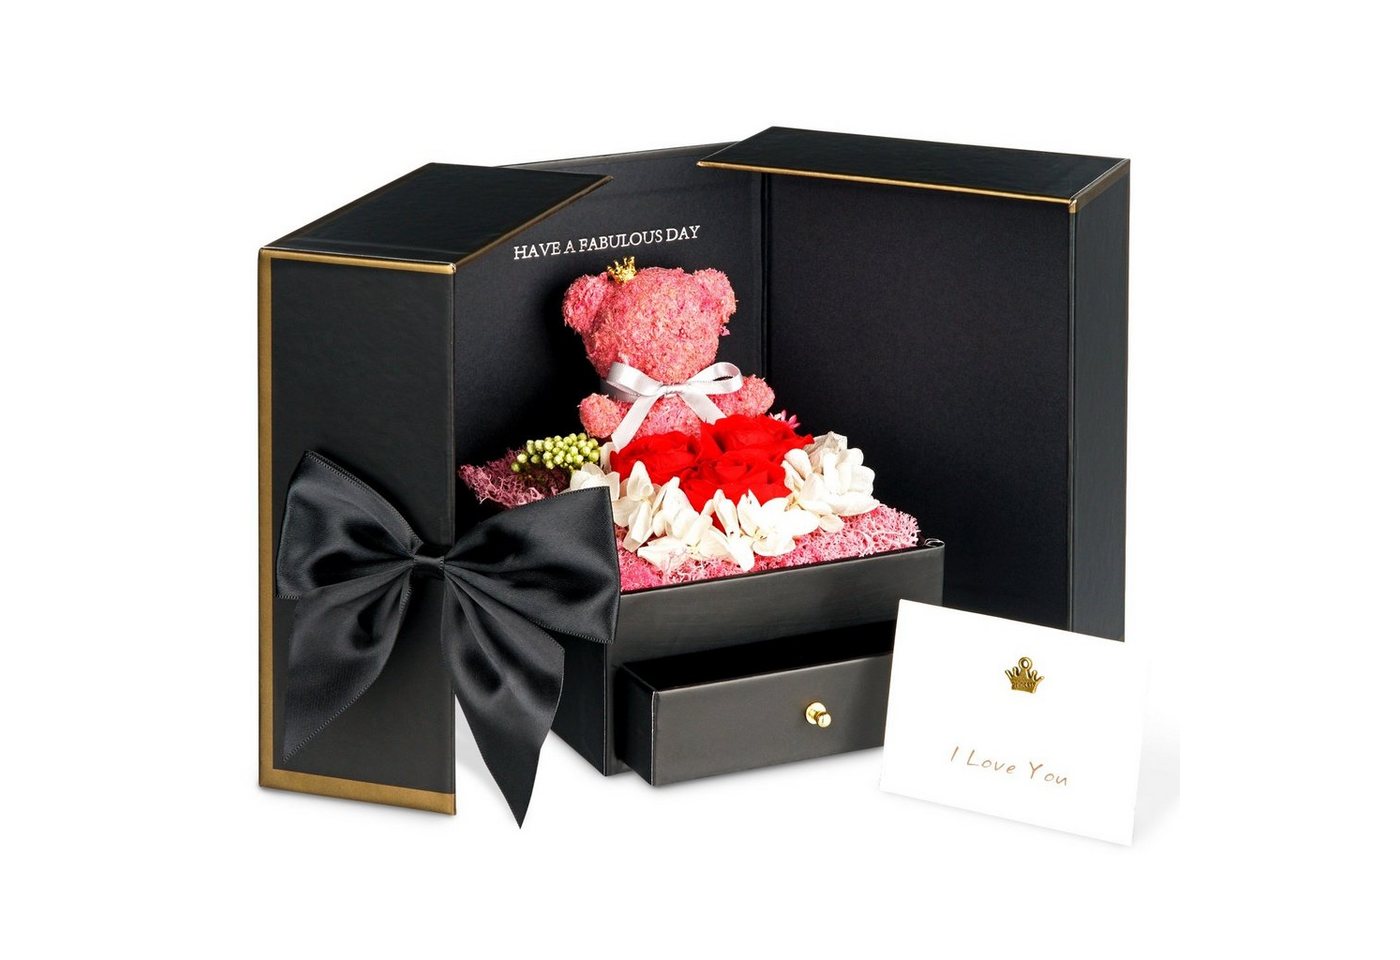 Kunstblume TRIPLE K Geschenkbox mit Rosen - Infinity Rosen - Geburtstag, Valentinstag, Hochzeitstag - 3 Jahre haltbar - mit Rosenduft - inklusive Grußkarte, TRIPLE K von TRIPLE K